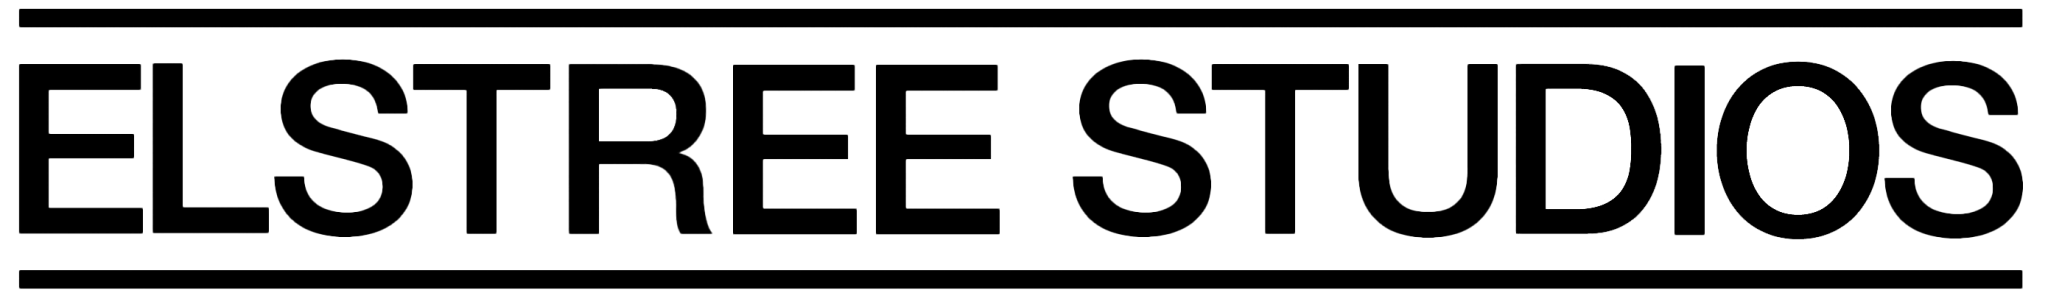 elstree-logo-transparent.png